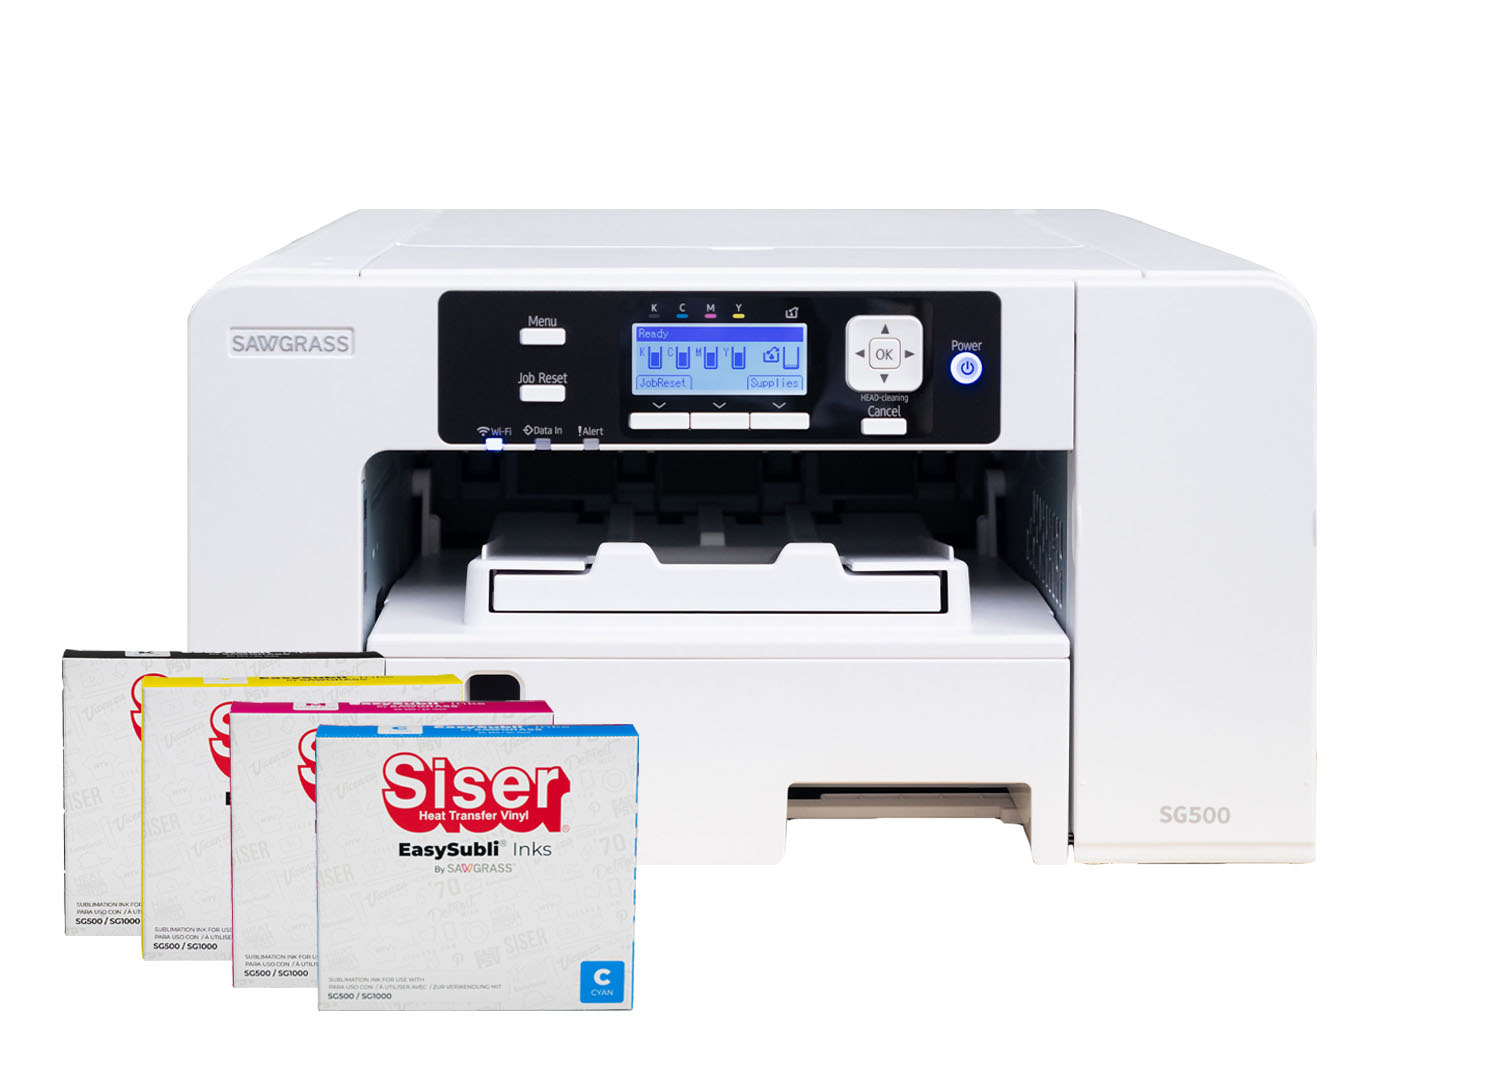 Sawgrass Stampante Sublimatica SG500 A4 con kit di installazione 20ml  inchiostri SISER - Necchi Shop Online